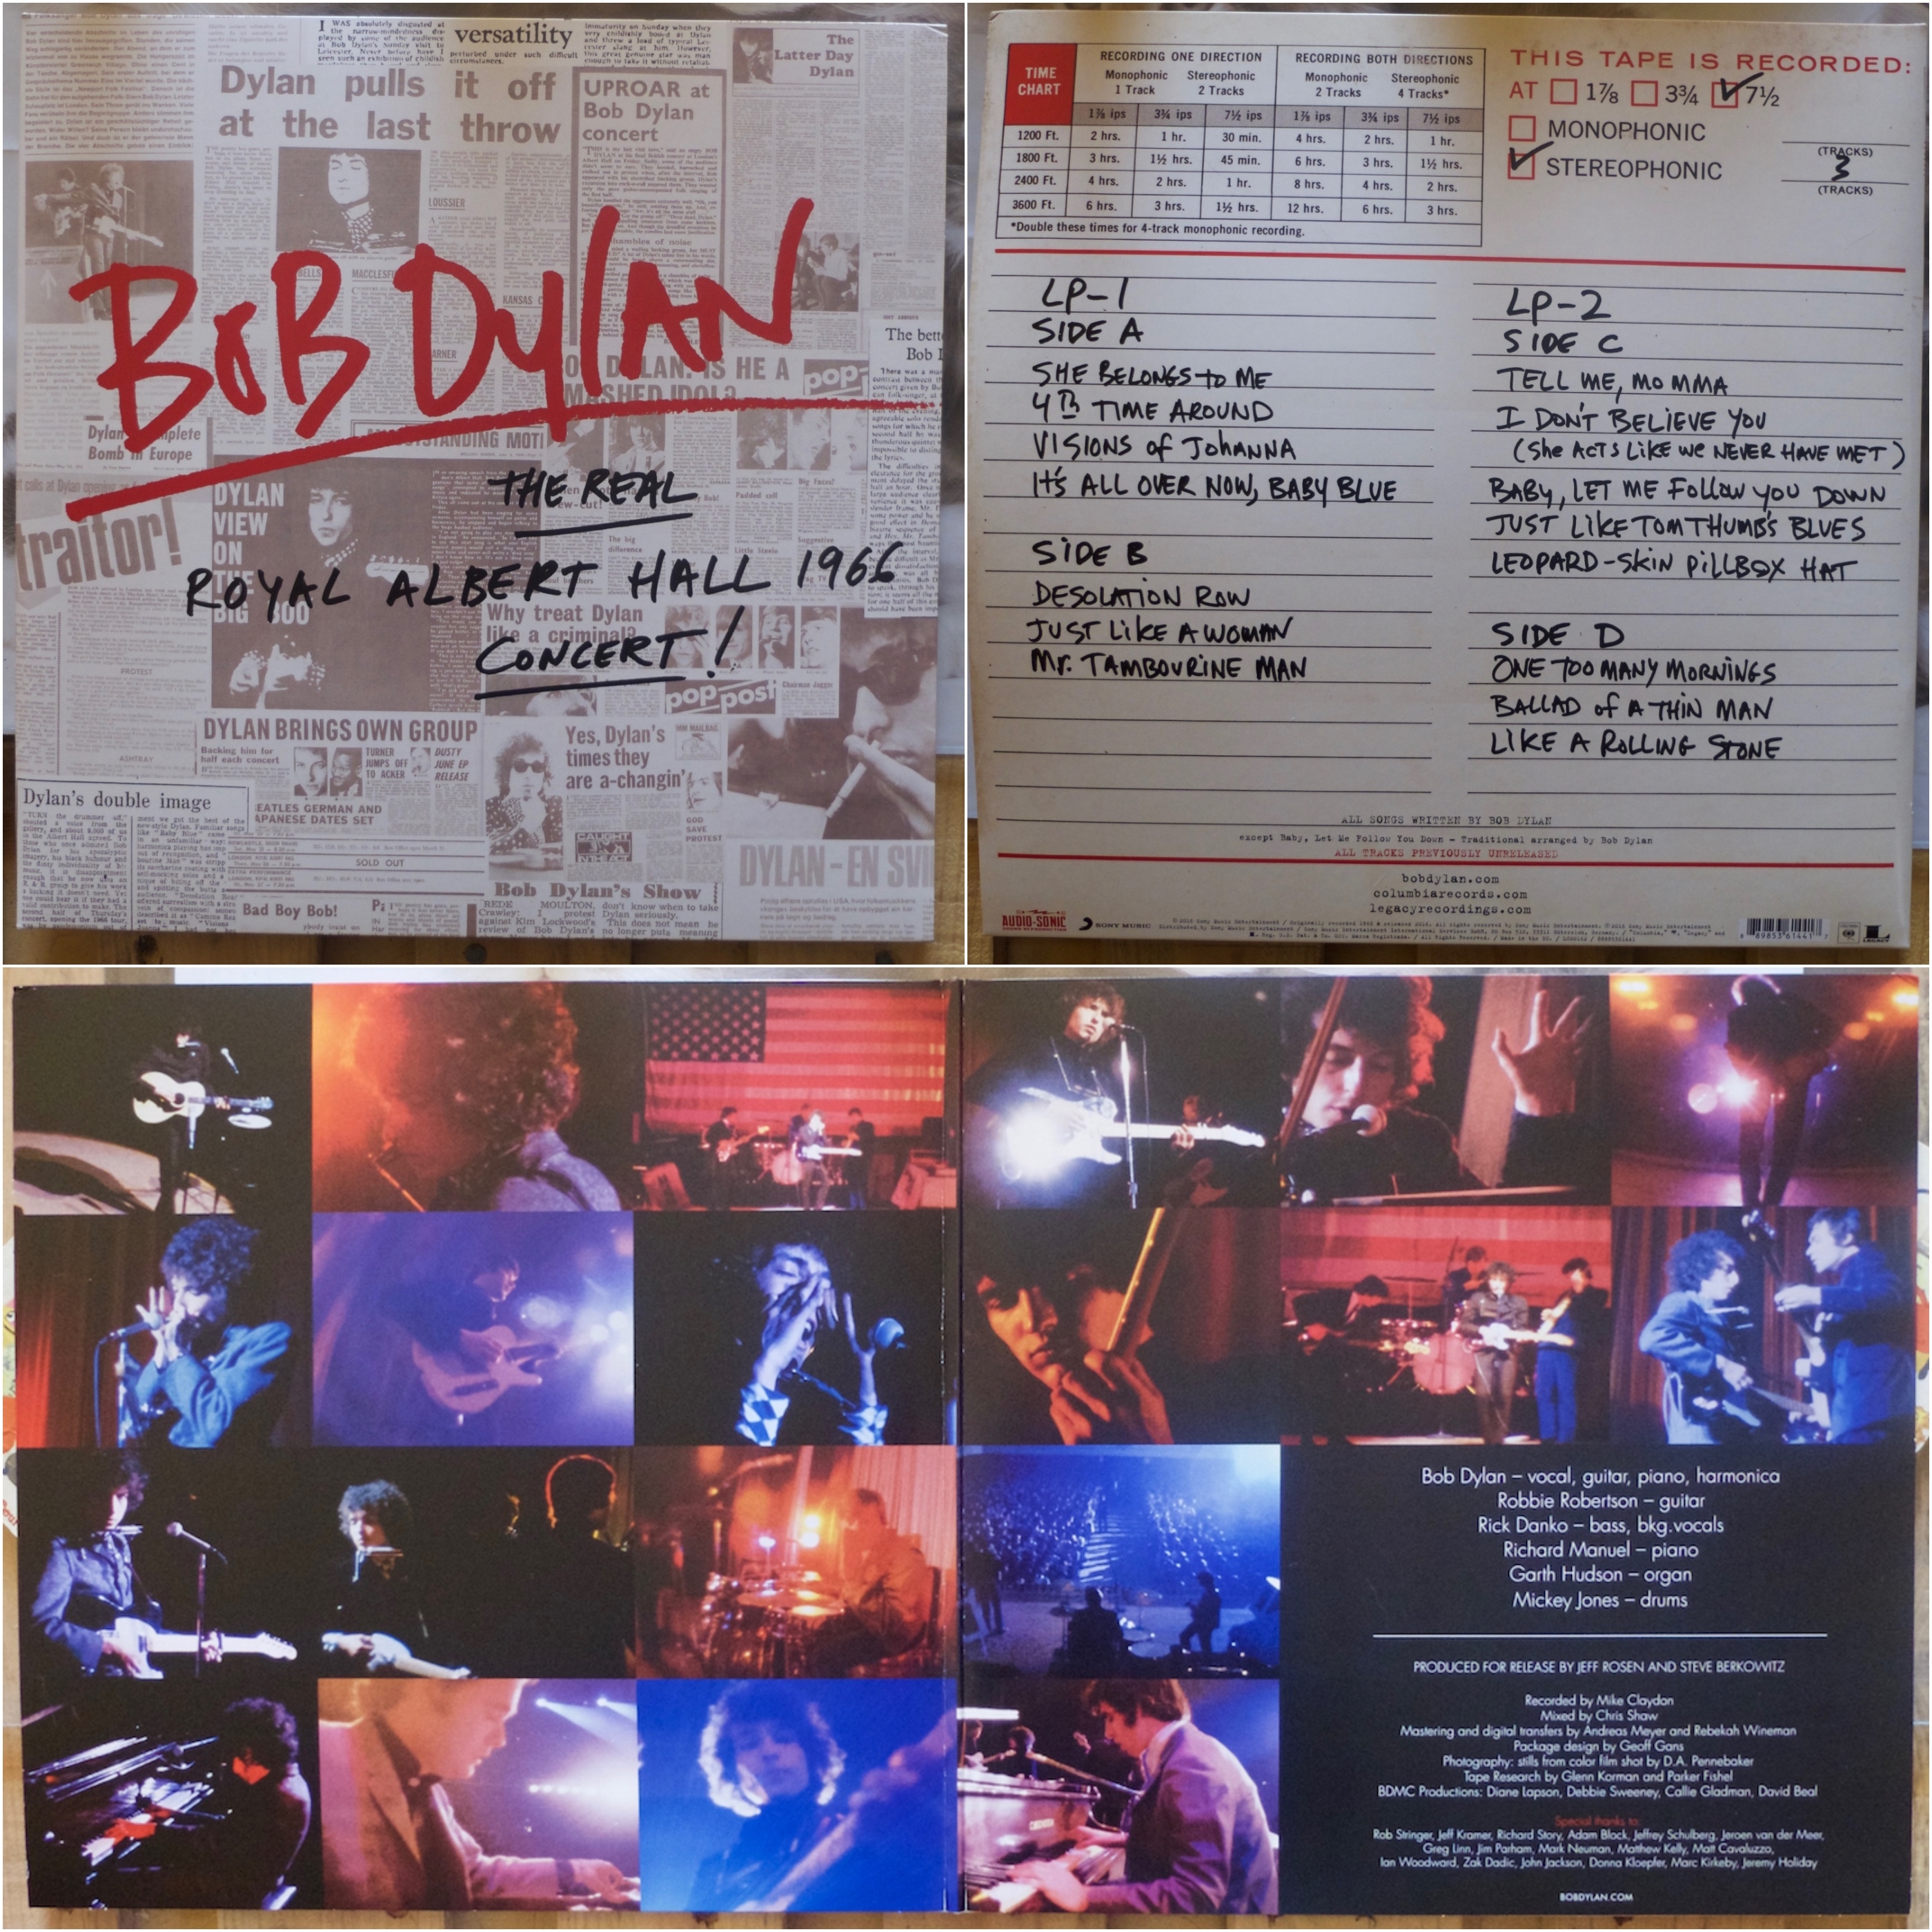 Bob Dylan : The Real Royal Albert Hall 1966 Concert